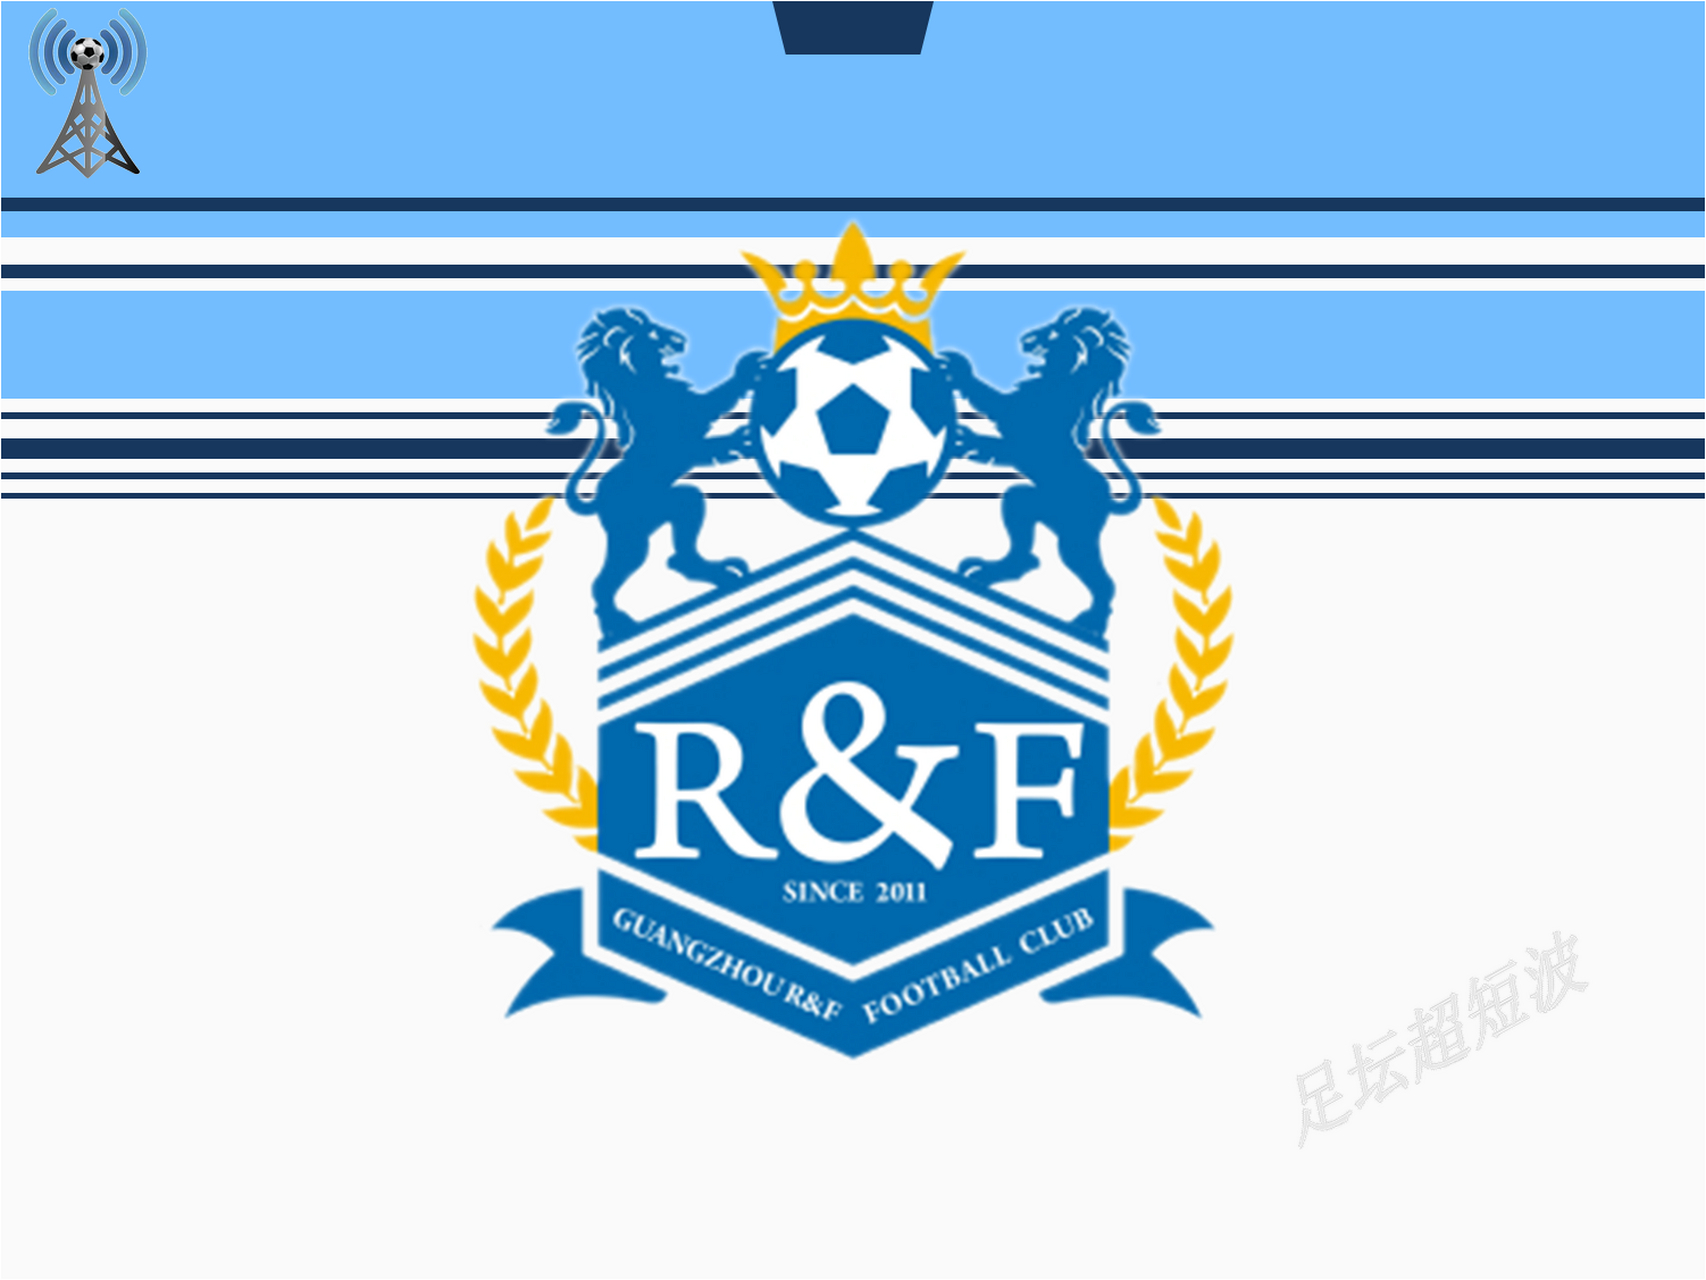 广州城足球俱乐部队徽图片